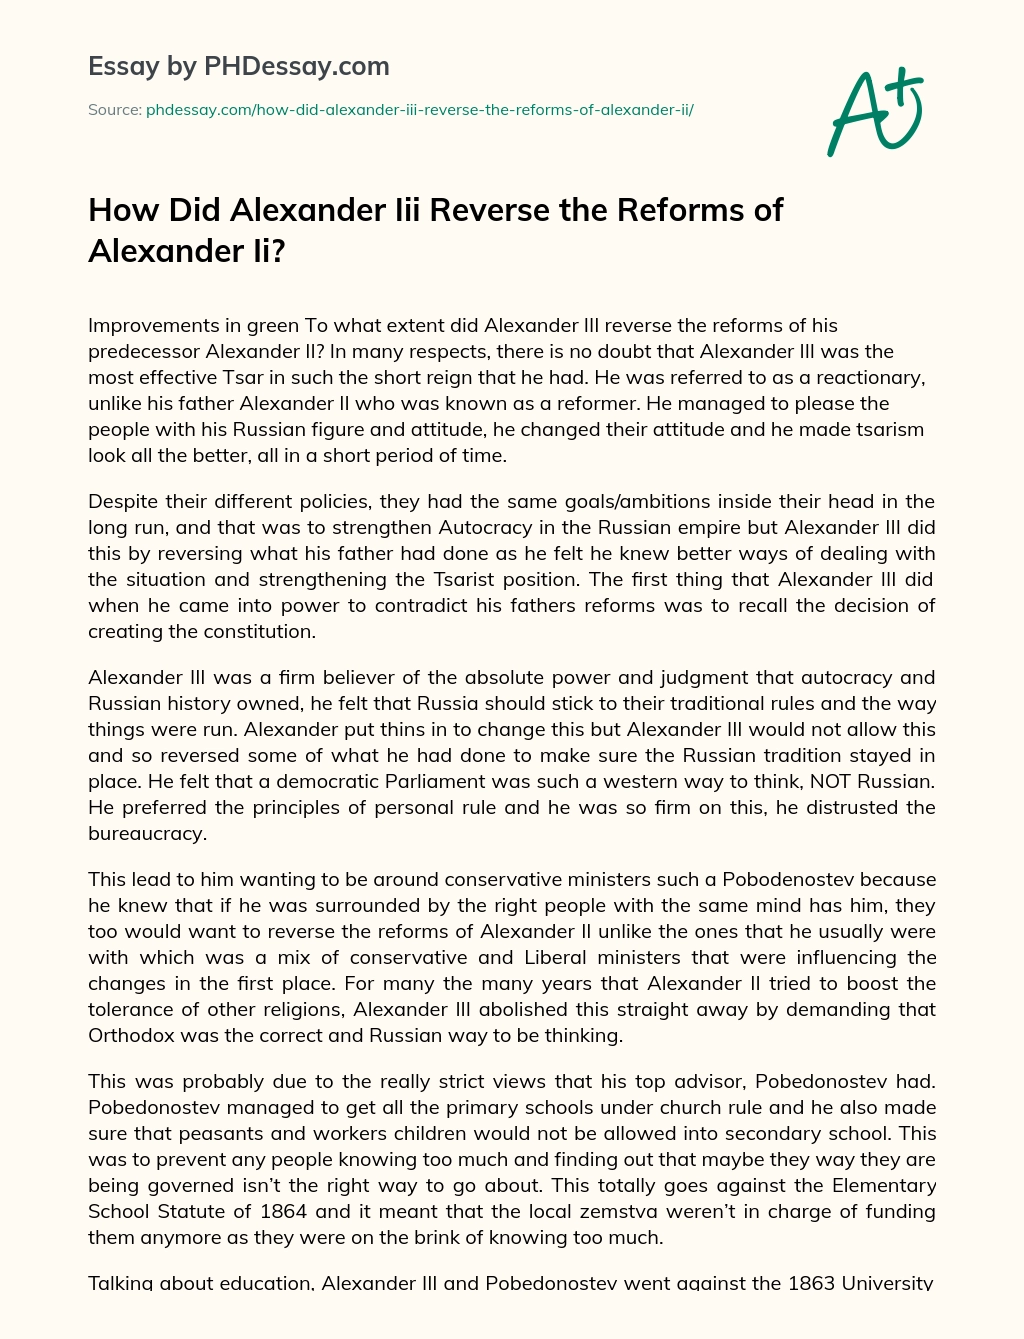 How Did Alexander Iii Reverse the Reforms of Alexander Ii? essay